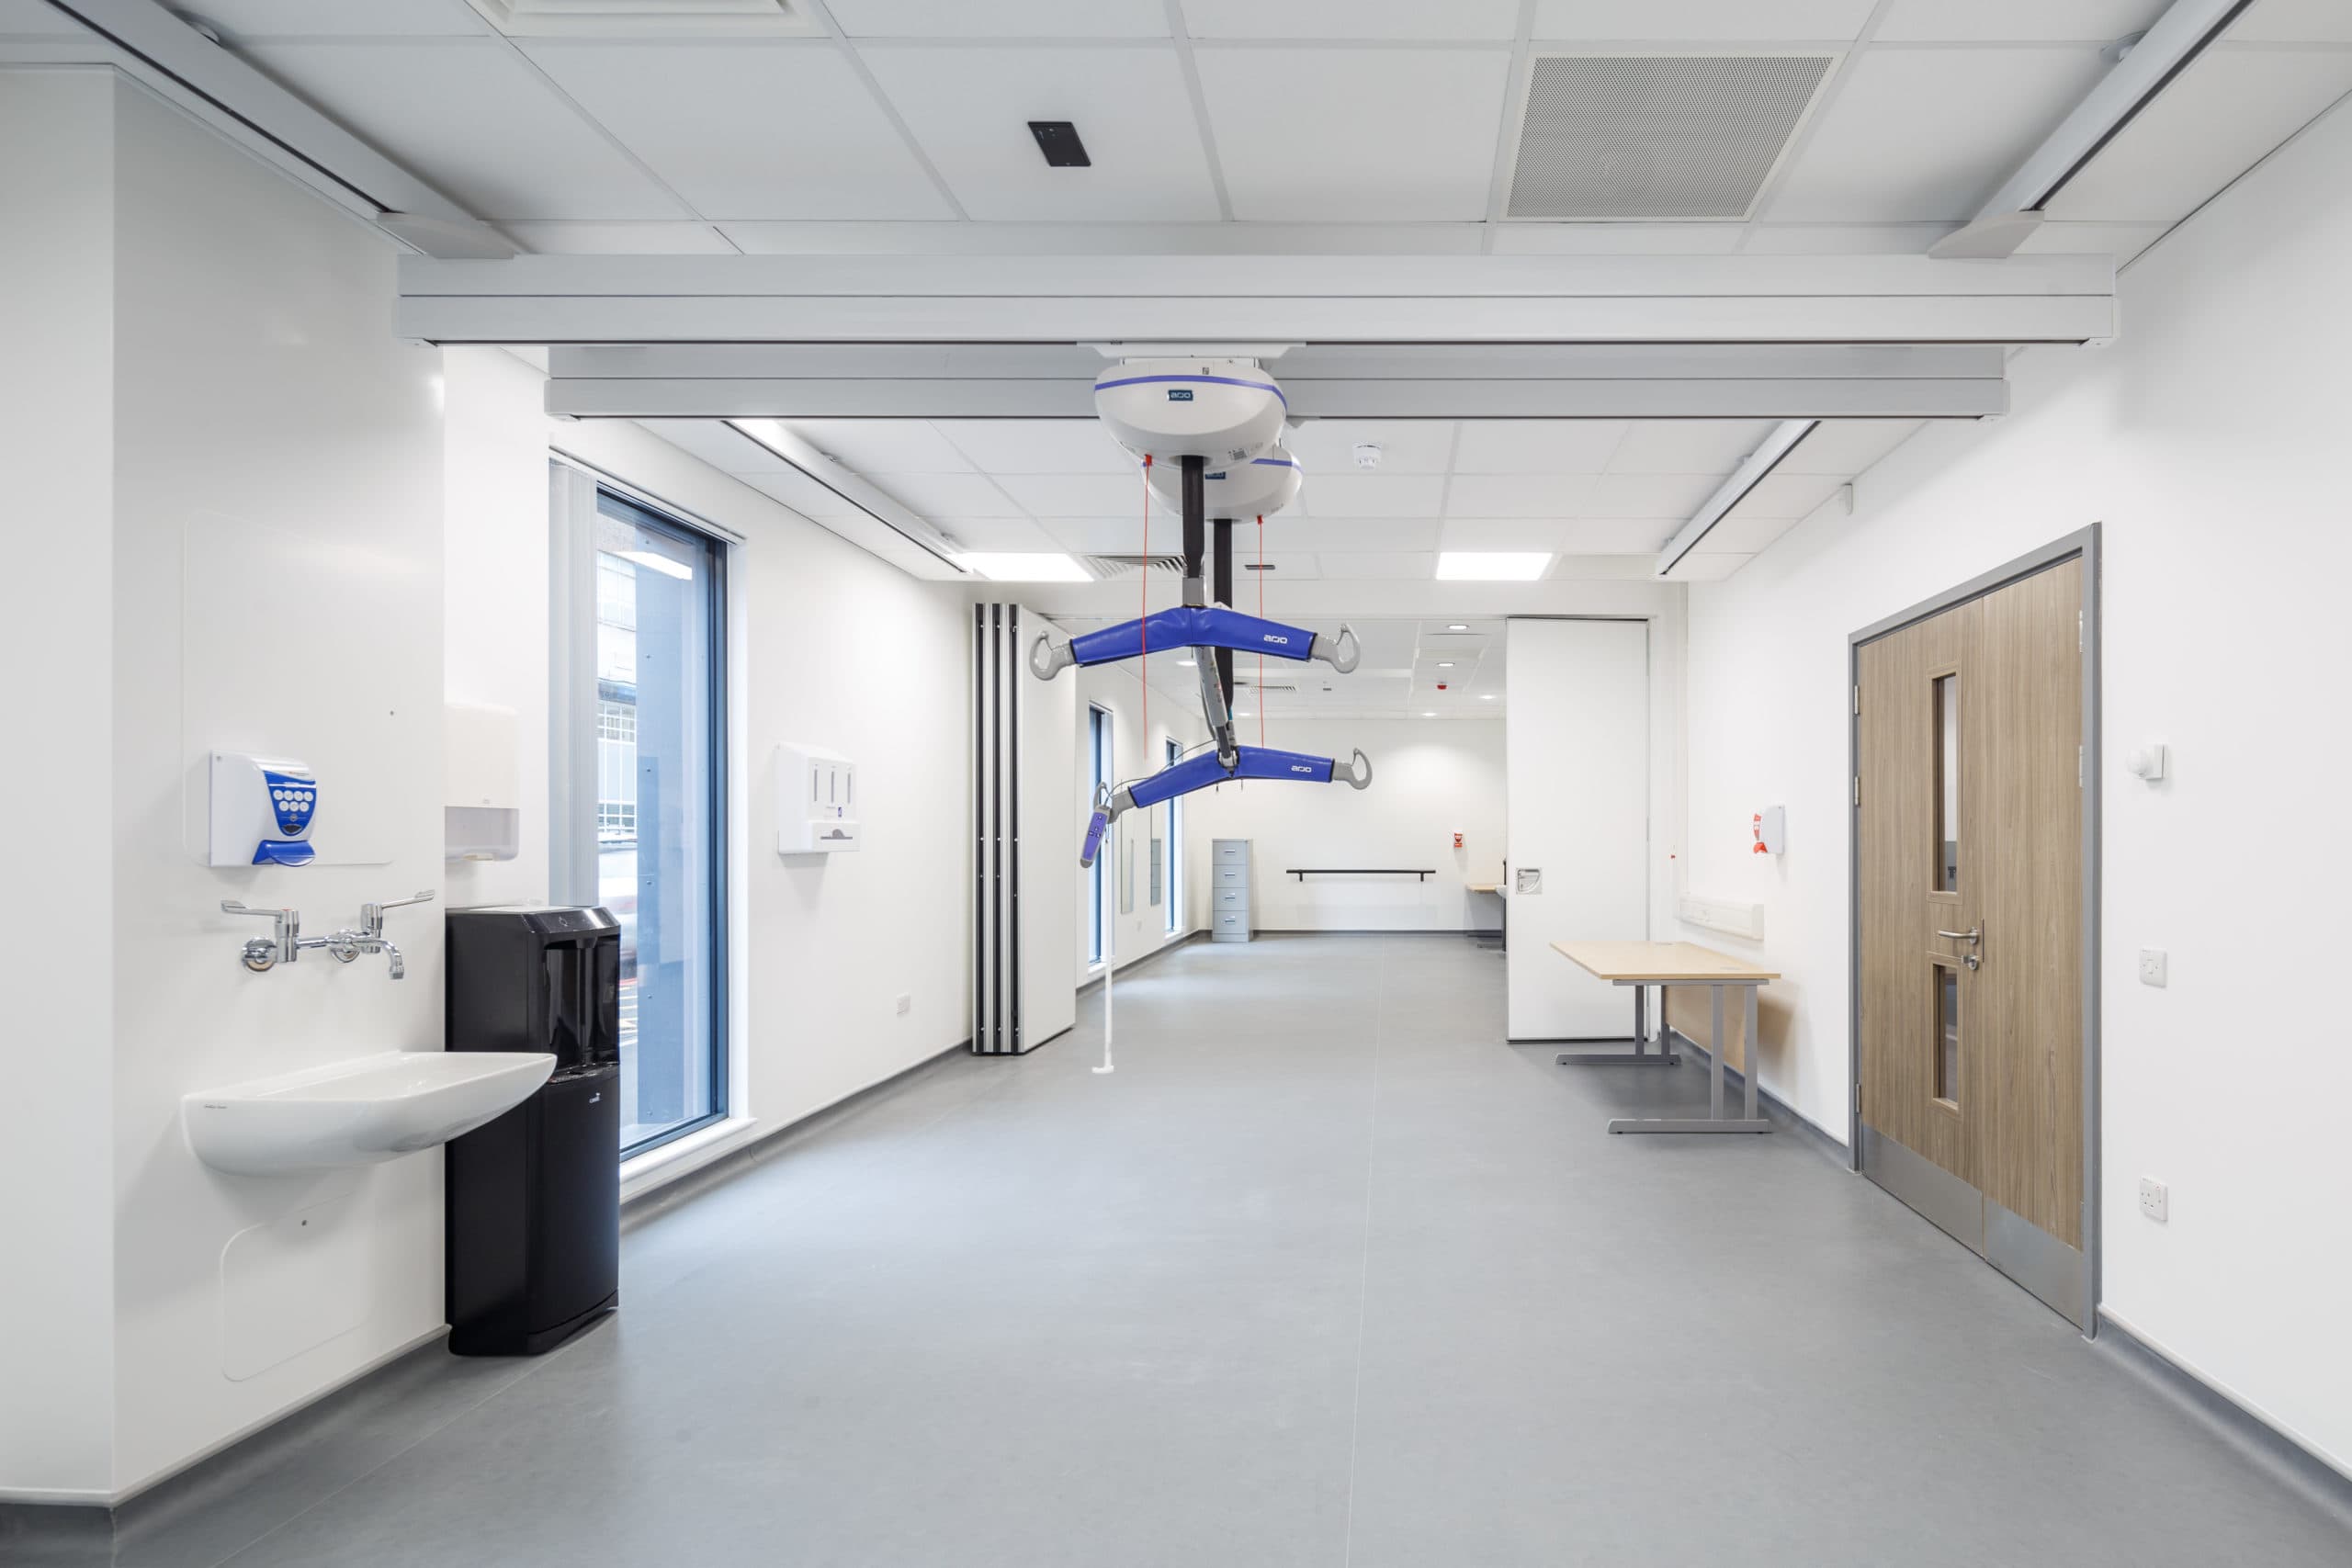 Hospital equipment inside a spacious modular hospital room. 